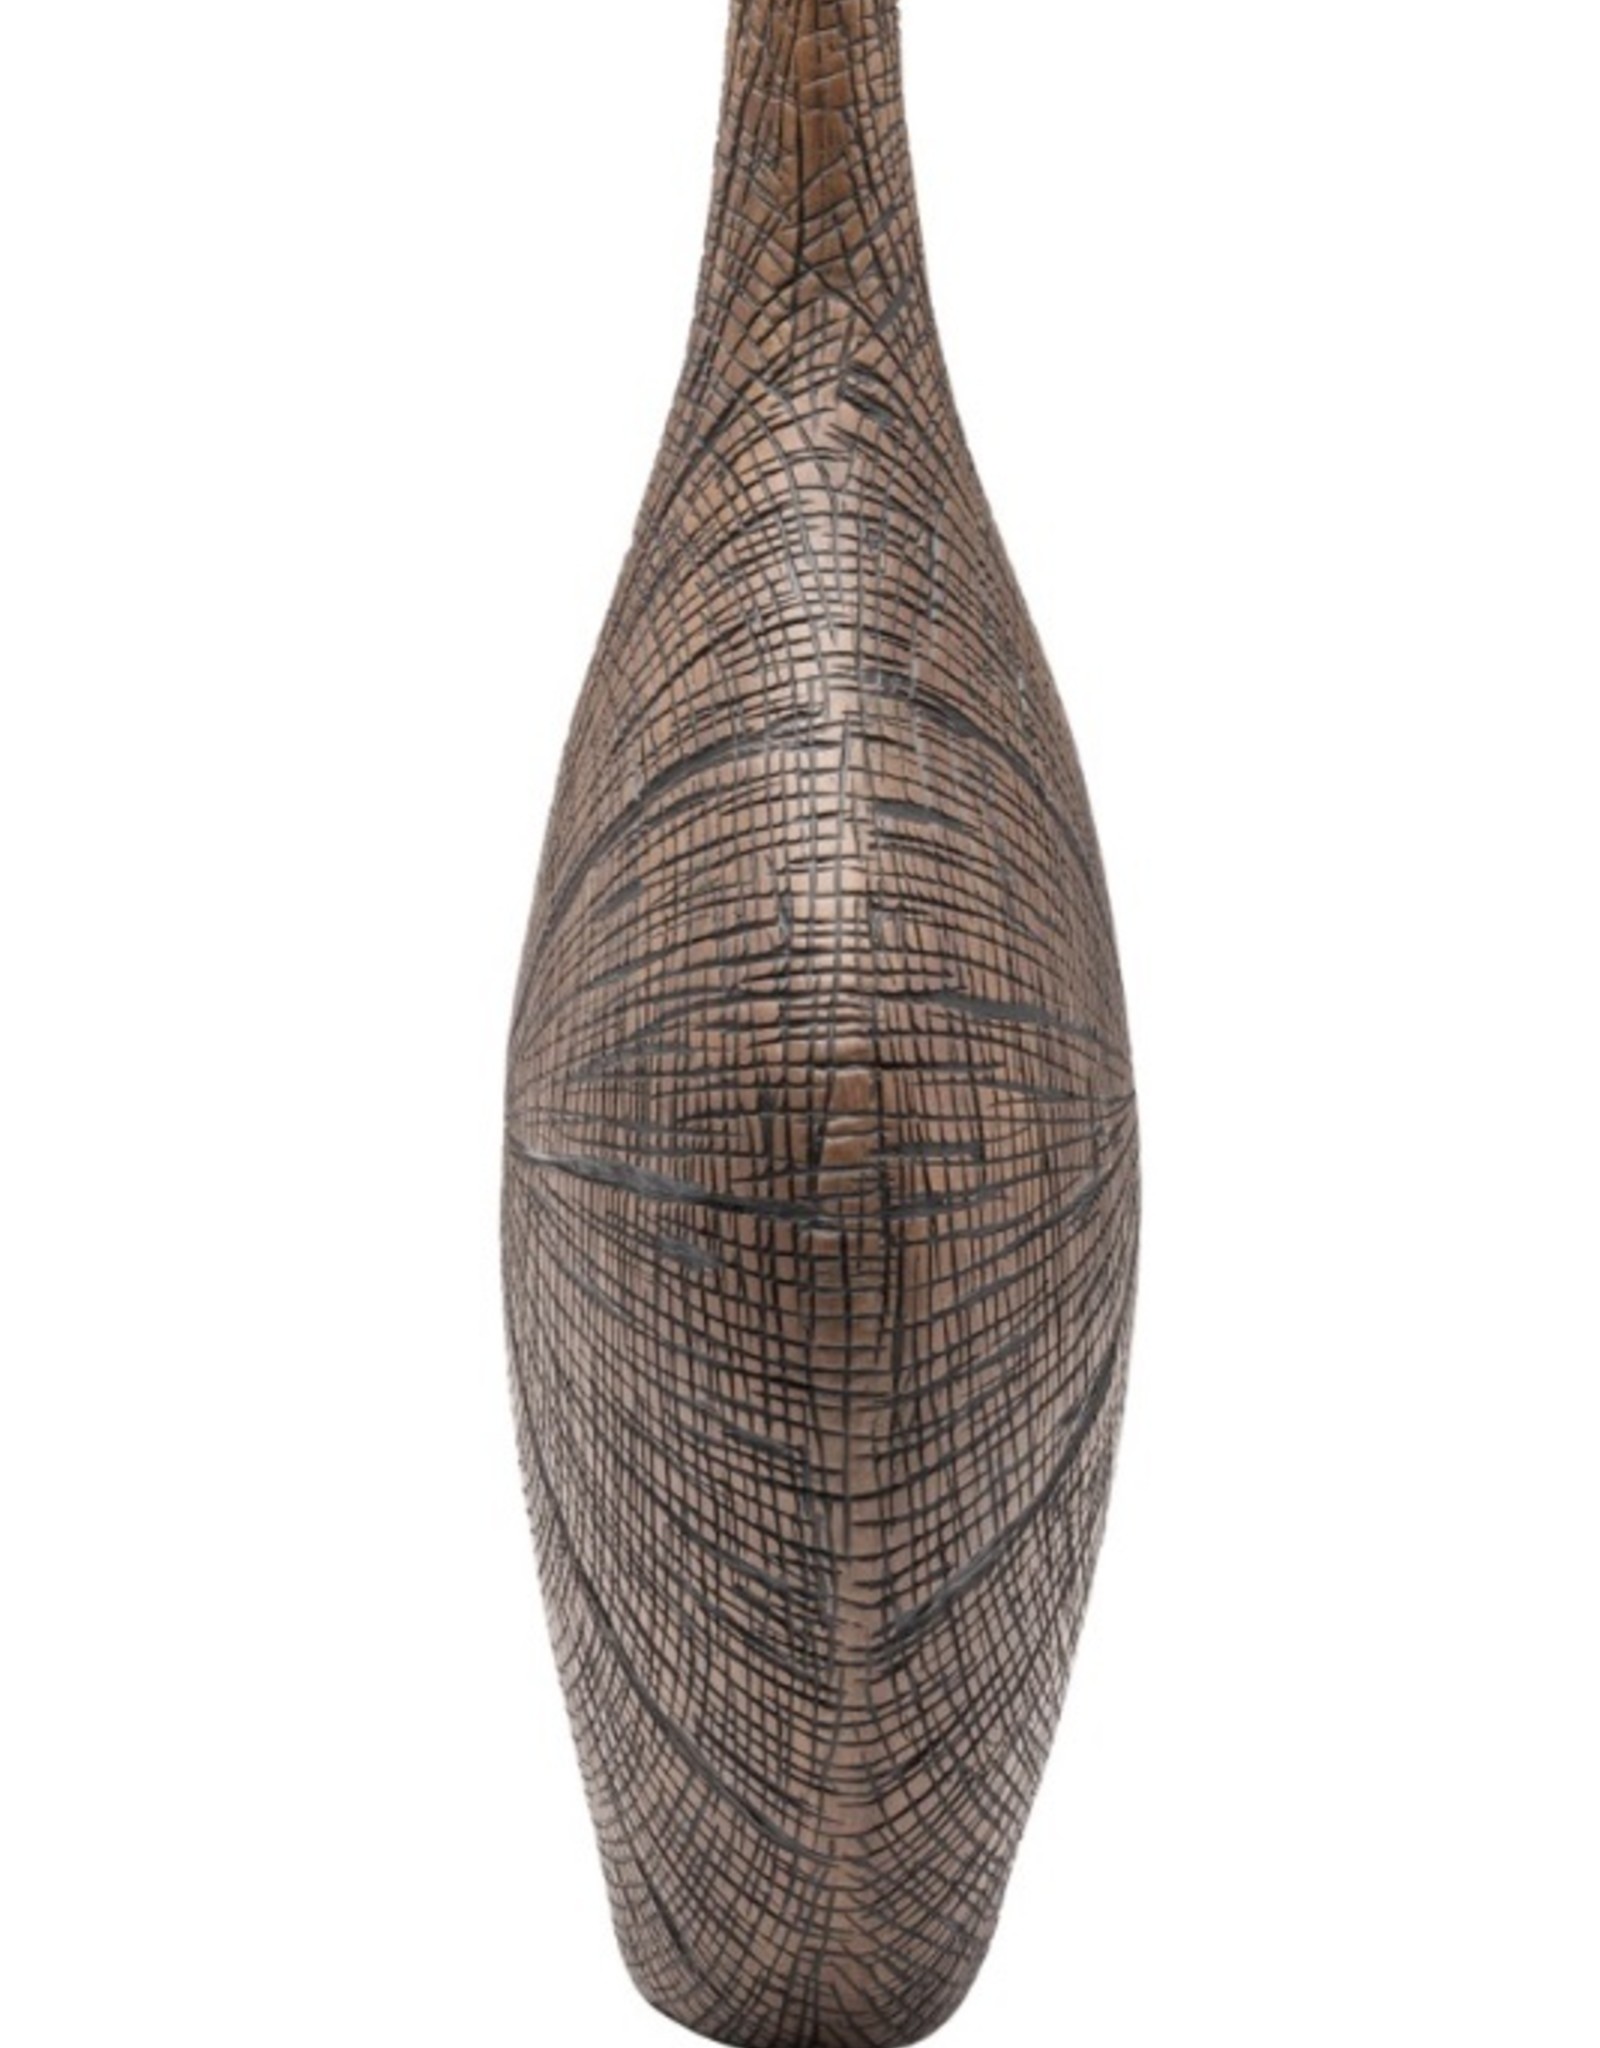 Vase T&T Radiant Bark Carved Resin Brown 16”H  904136C